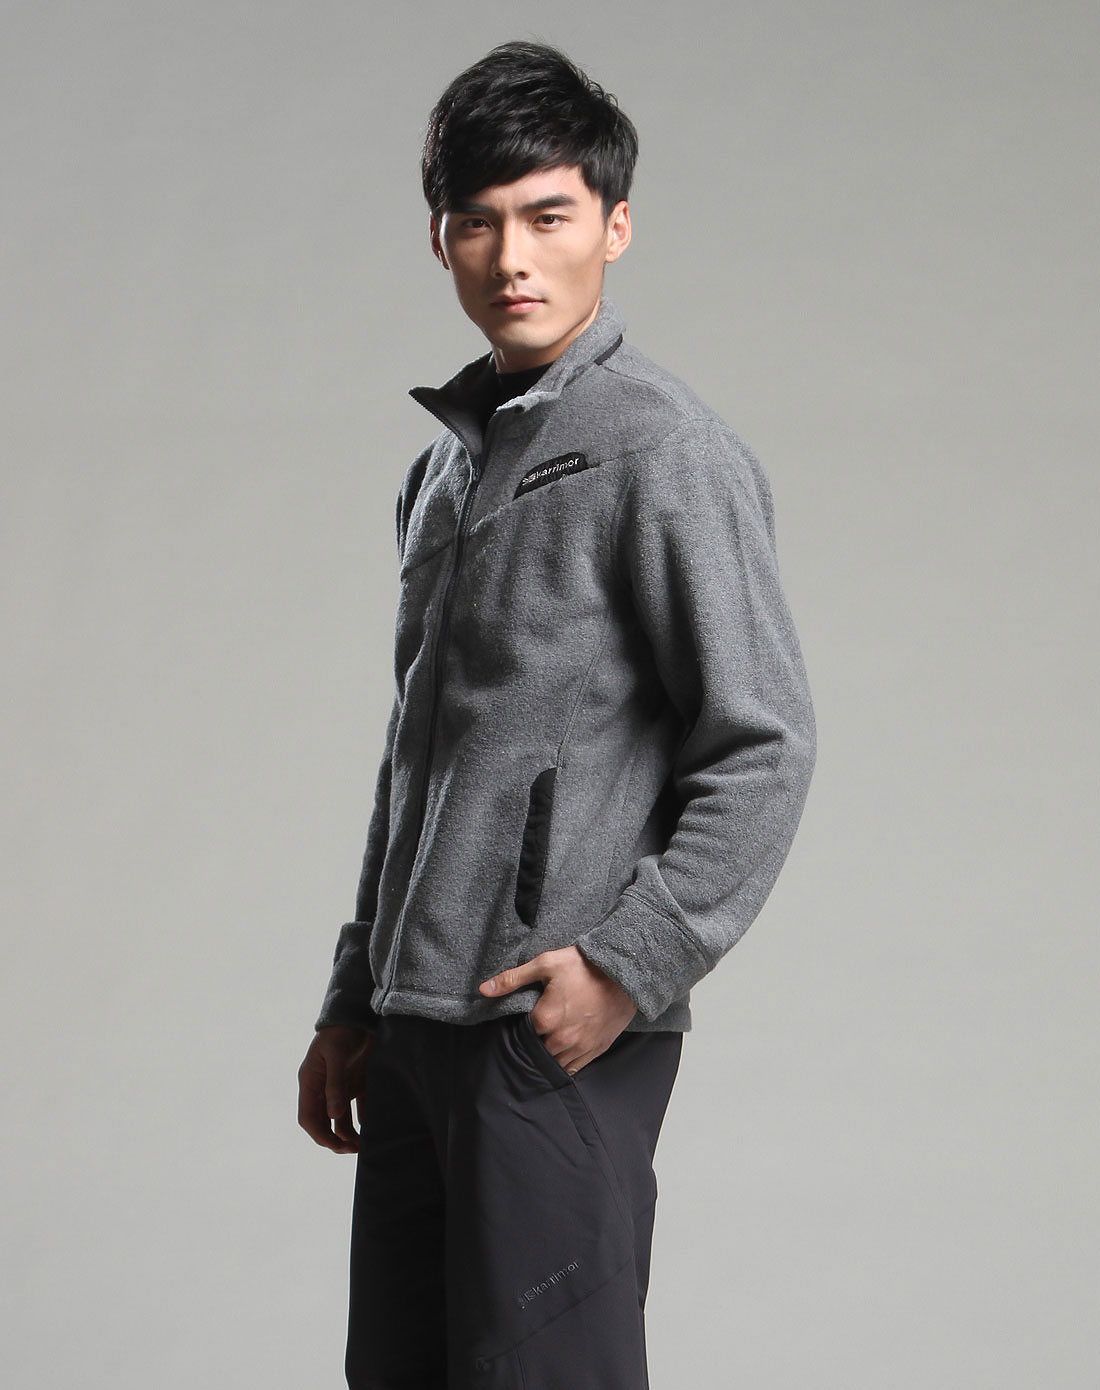 男韩版潮流烟灰色夹克精神小伙价格质量 哪个牌子比较